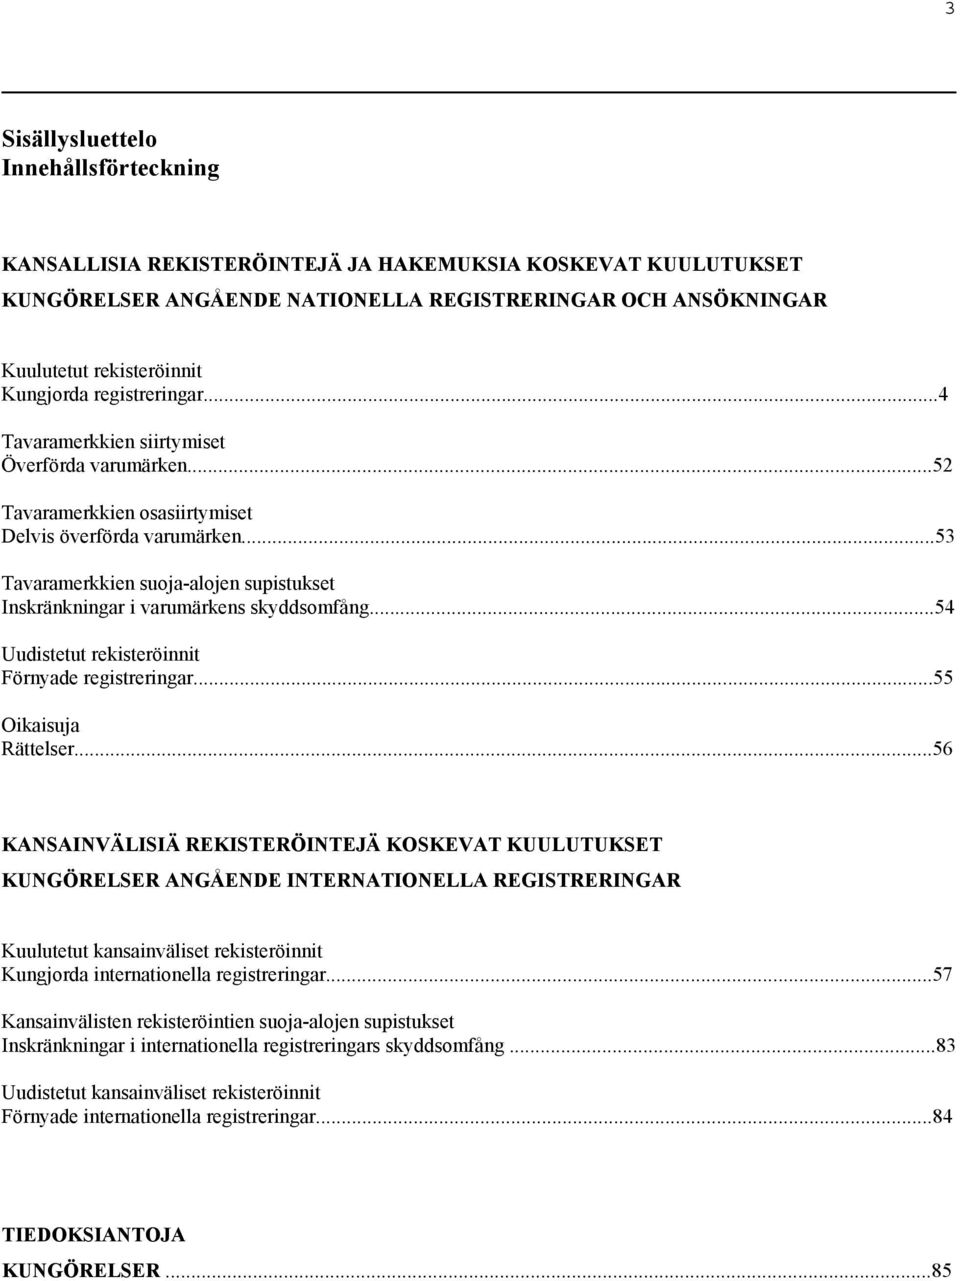 ..53 Tavaramerkkien suoja-alojen supistukset Inskränkningar i varumärkens skyddsomfång...54 Uudistetut rekisteröinnit Förnyade registreringar...55 Oikaisuja Rättelser.